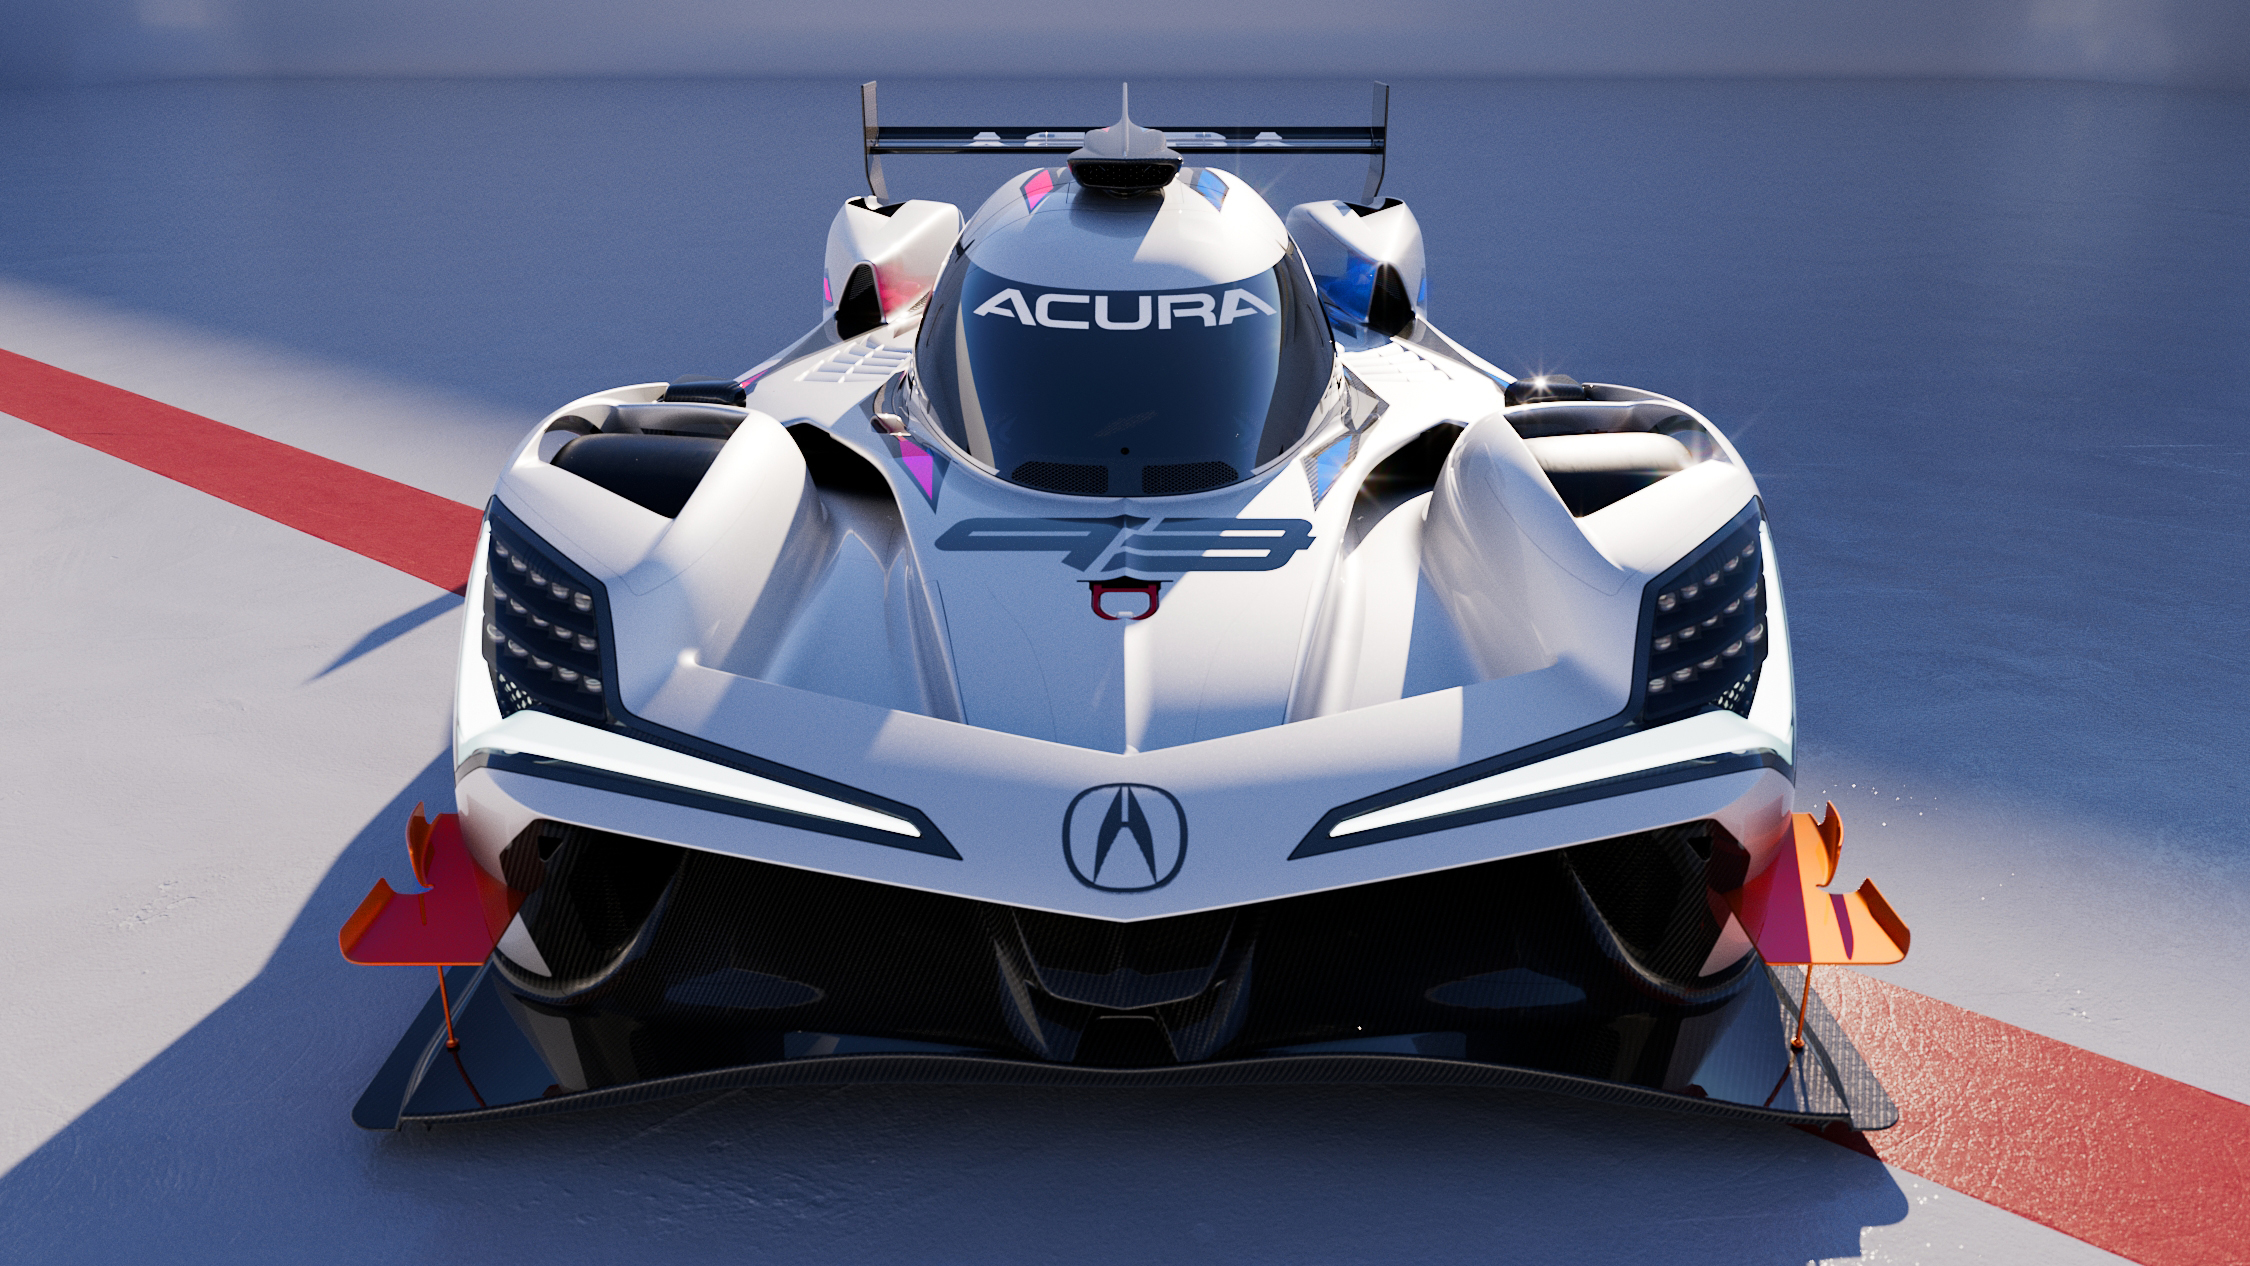 Acura presenta el nuevo auto de carreras electrificado ARX-06